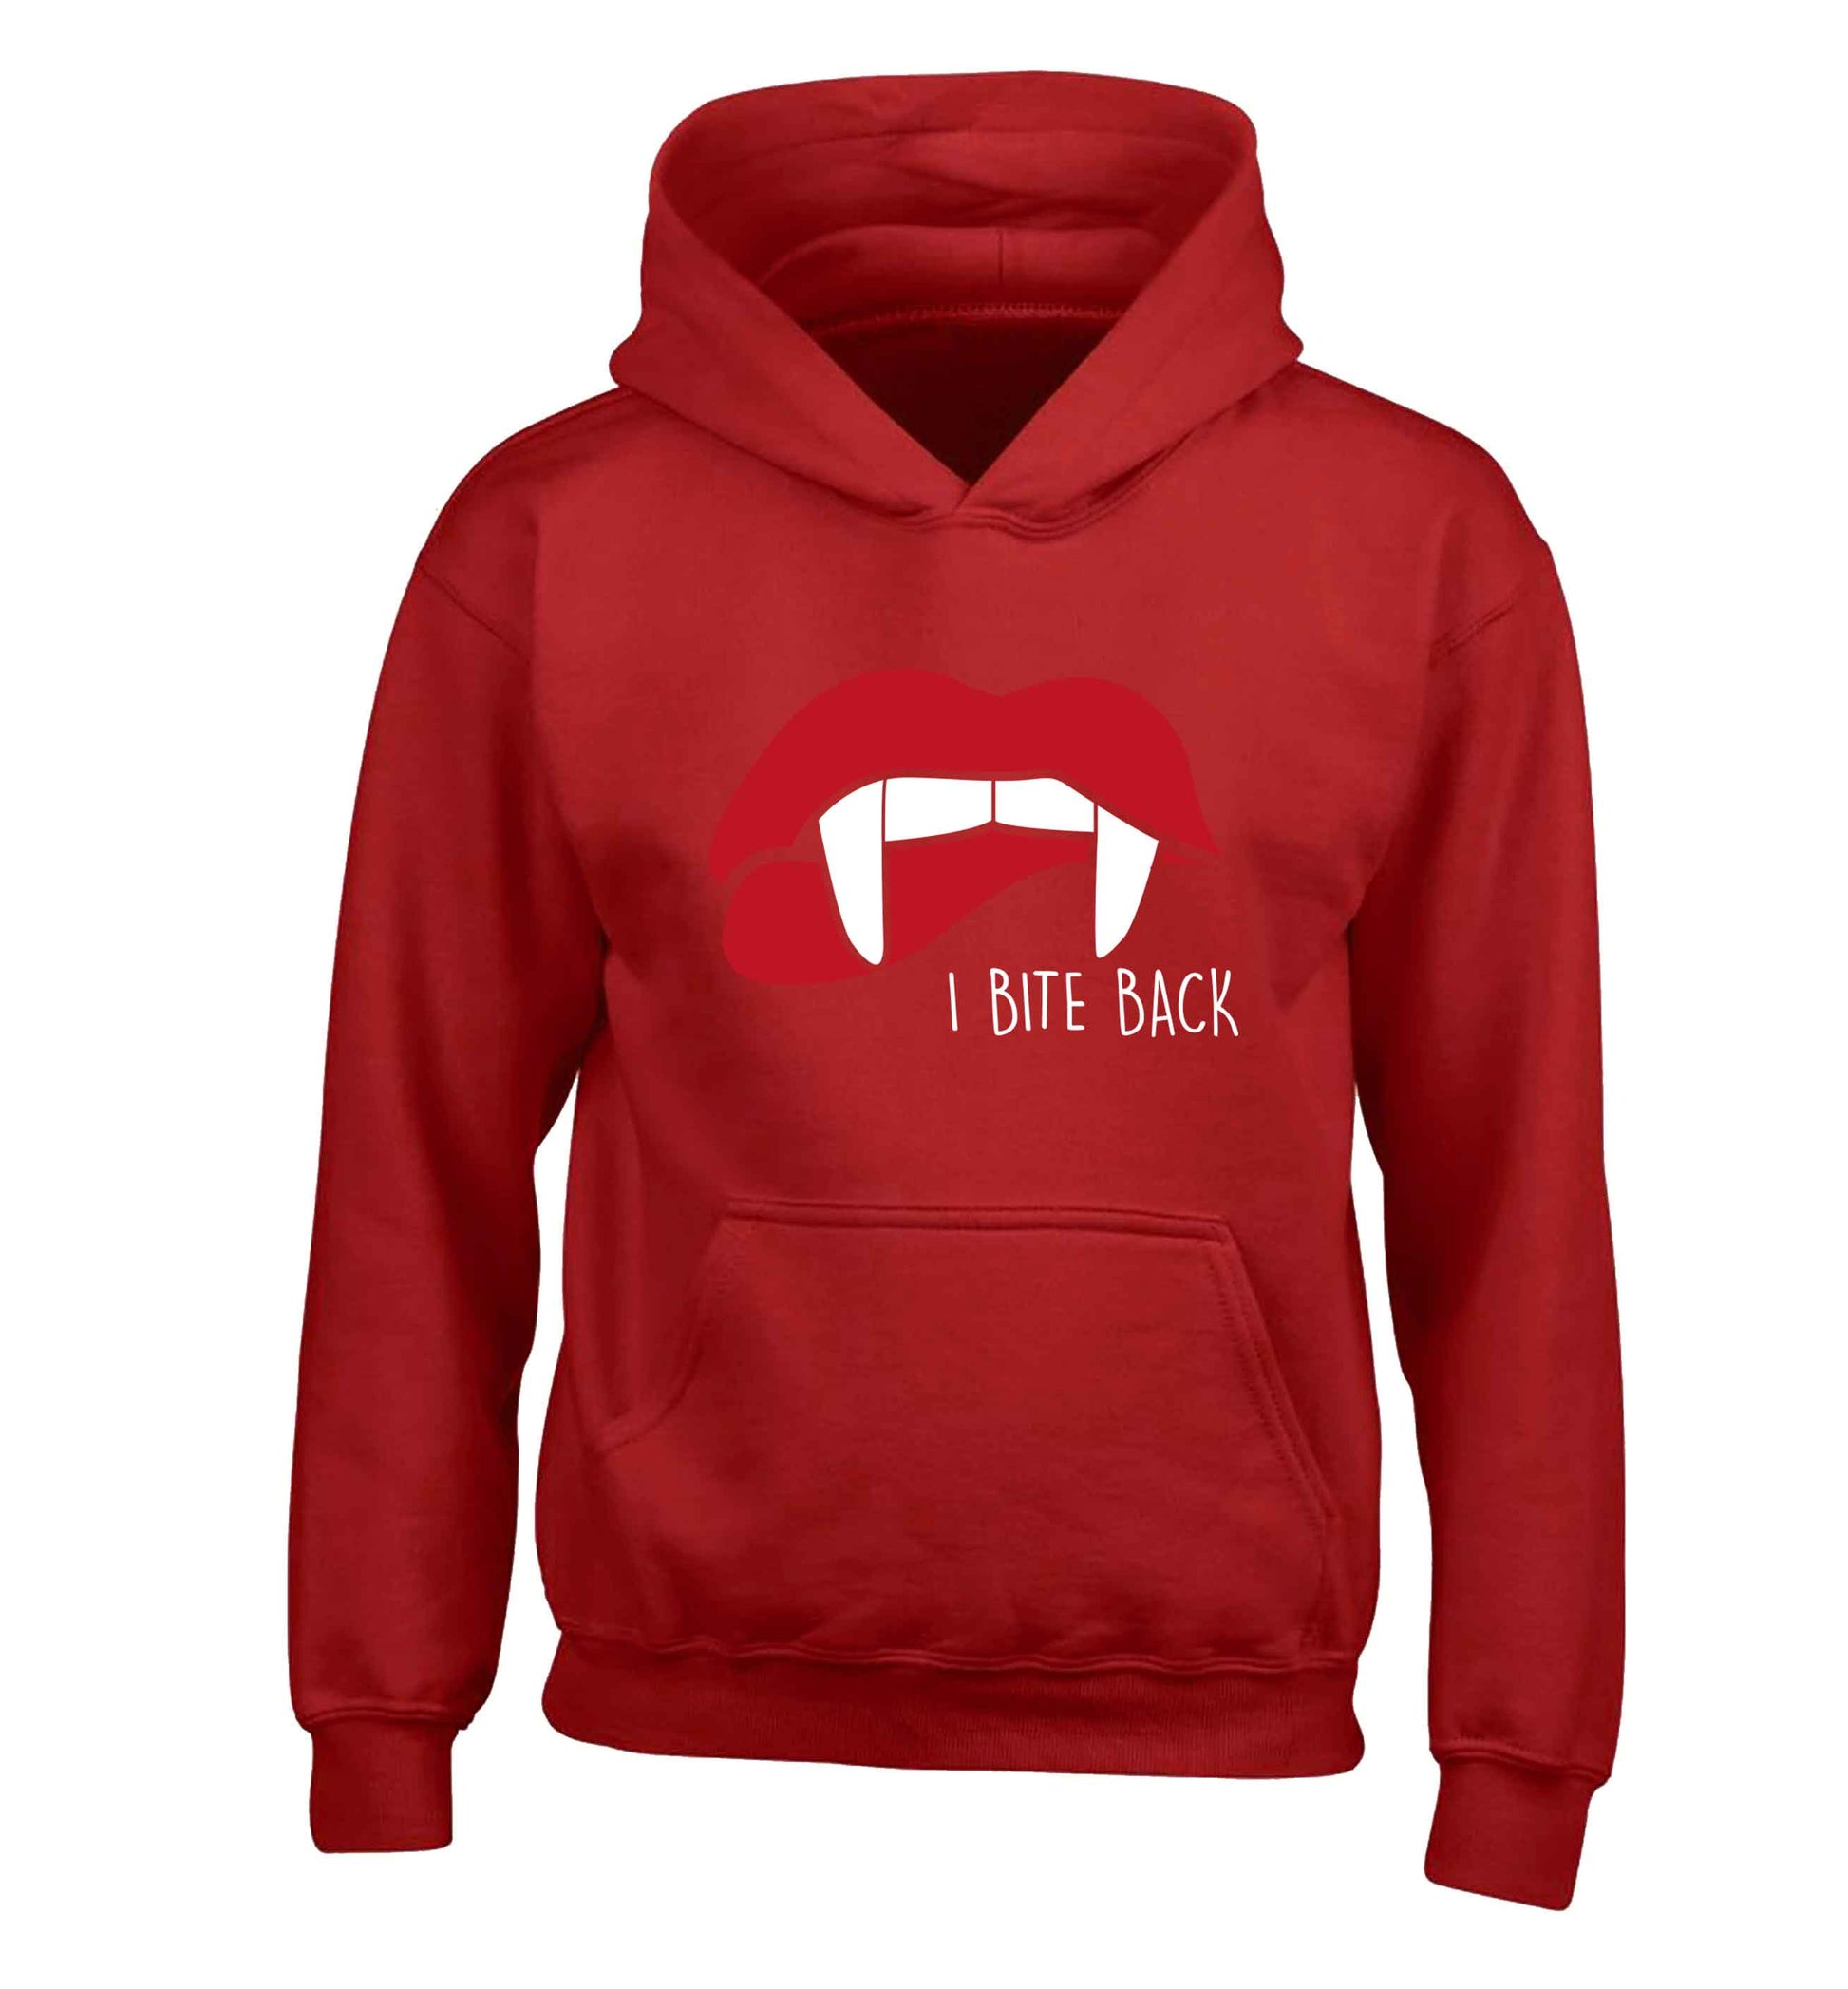 I bite back children's red hoodie 12-13 Years